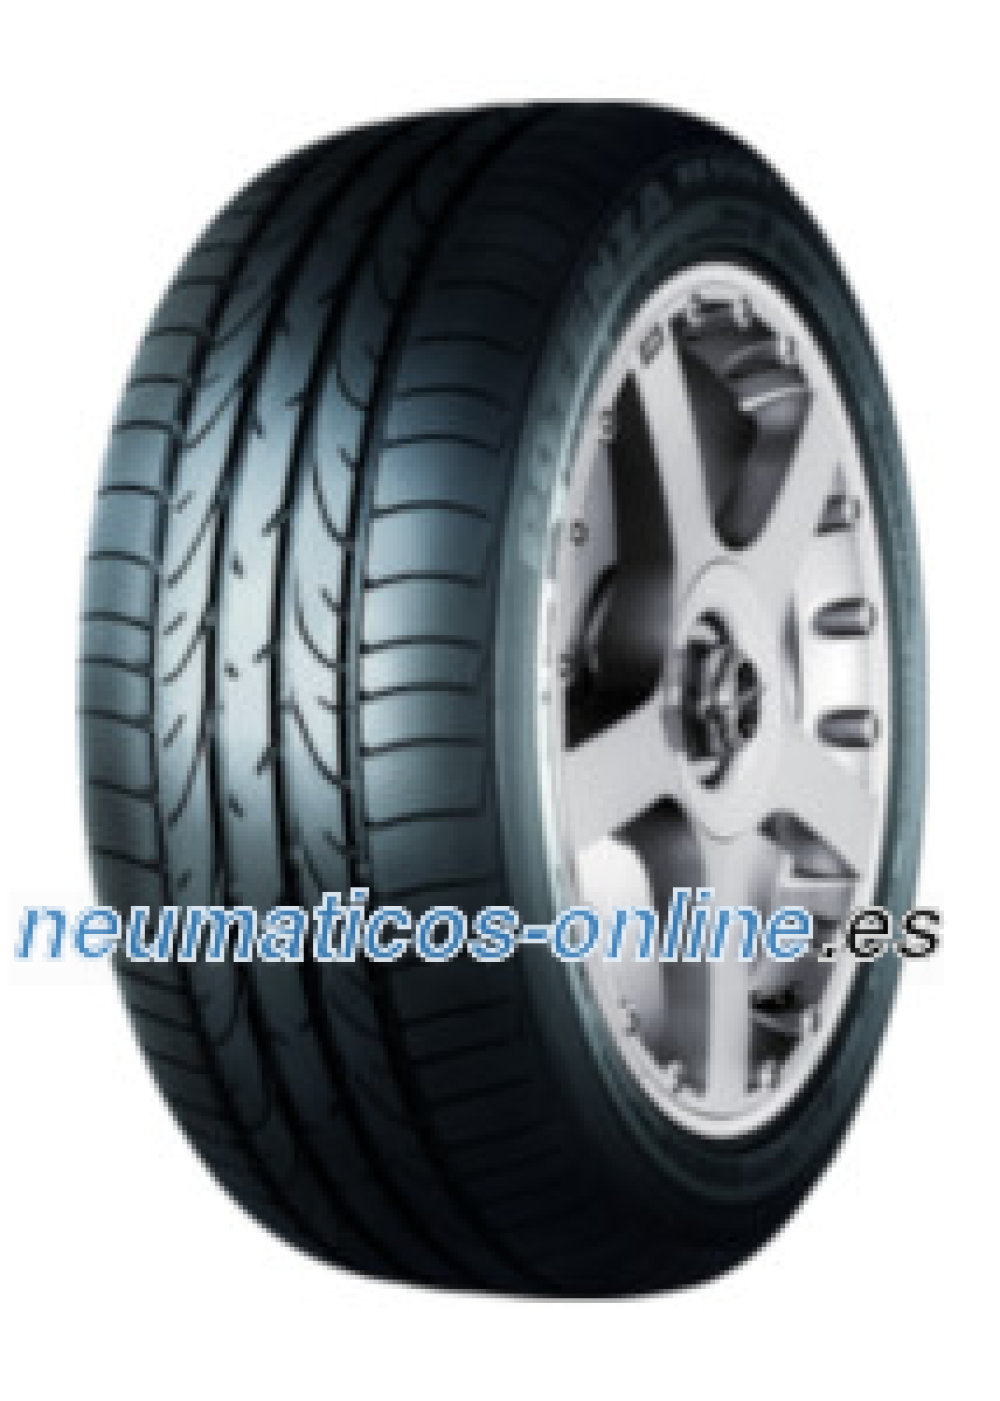 Bridgestone Potenza 050 I RFT 225/50 R16 92W *, runflat- neumaticos -online.es